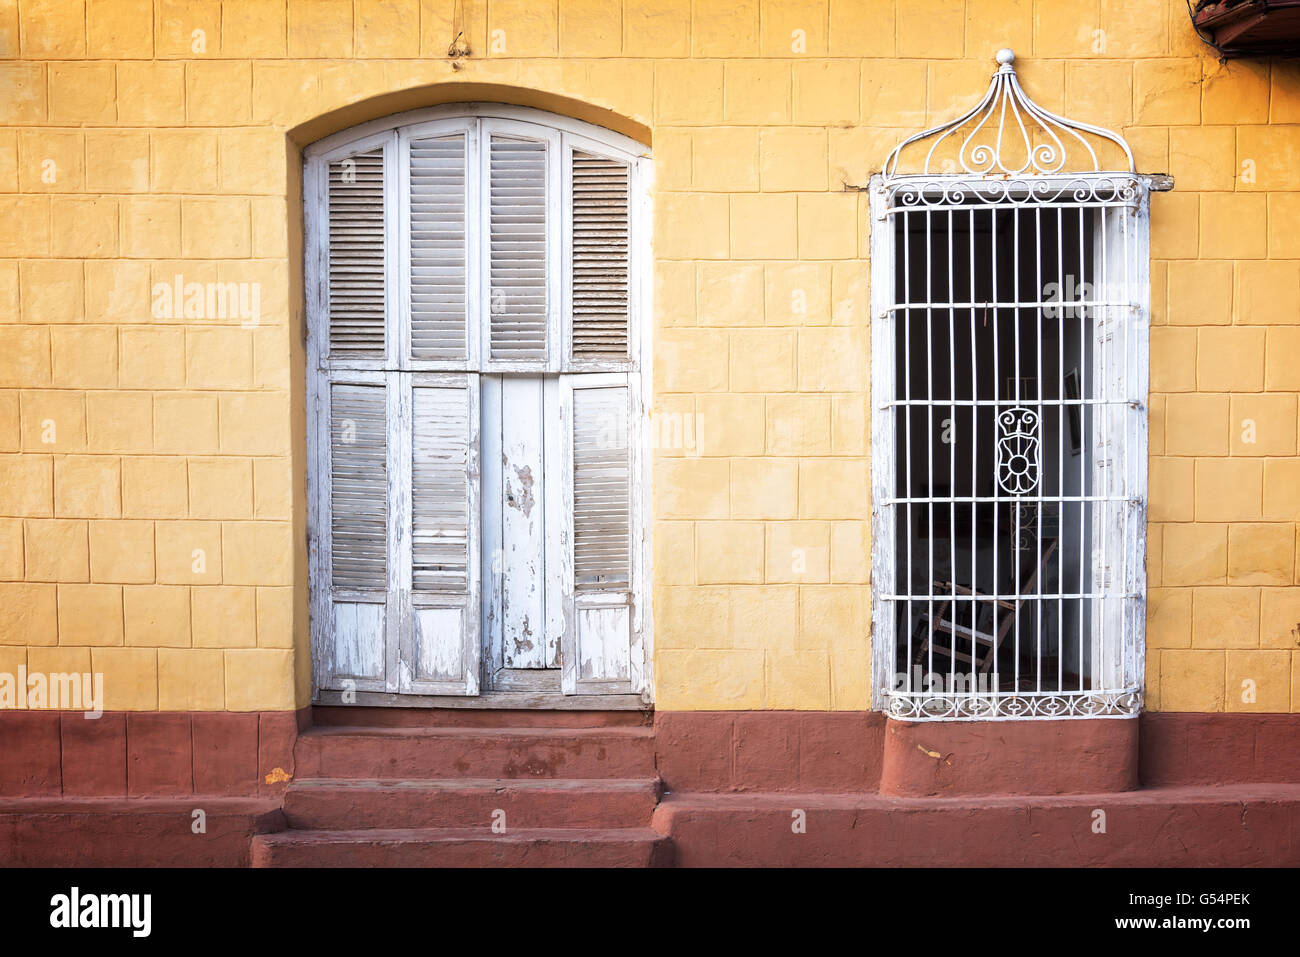 Façade de maison colorée dans une rue de Trinidad, Cuba Banque D'Images